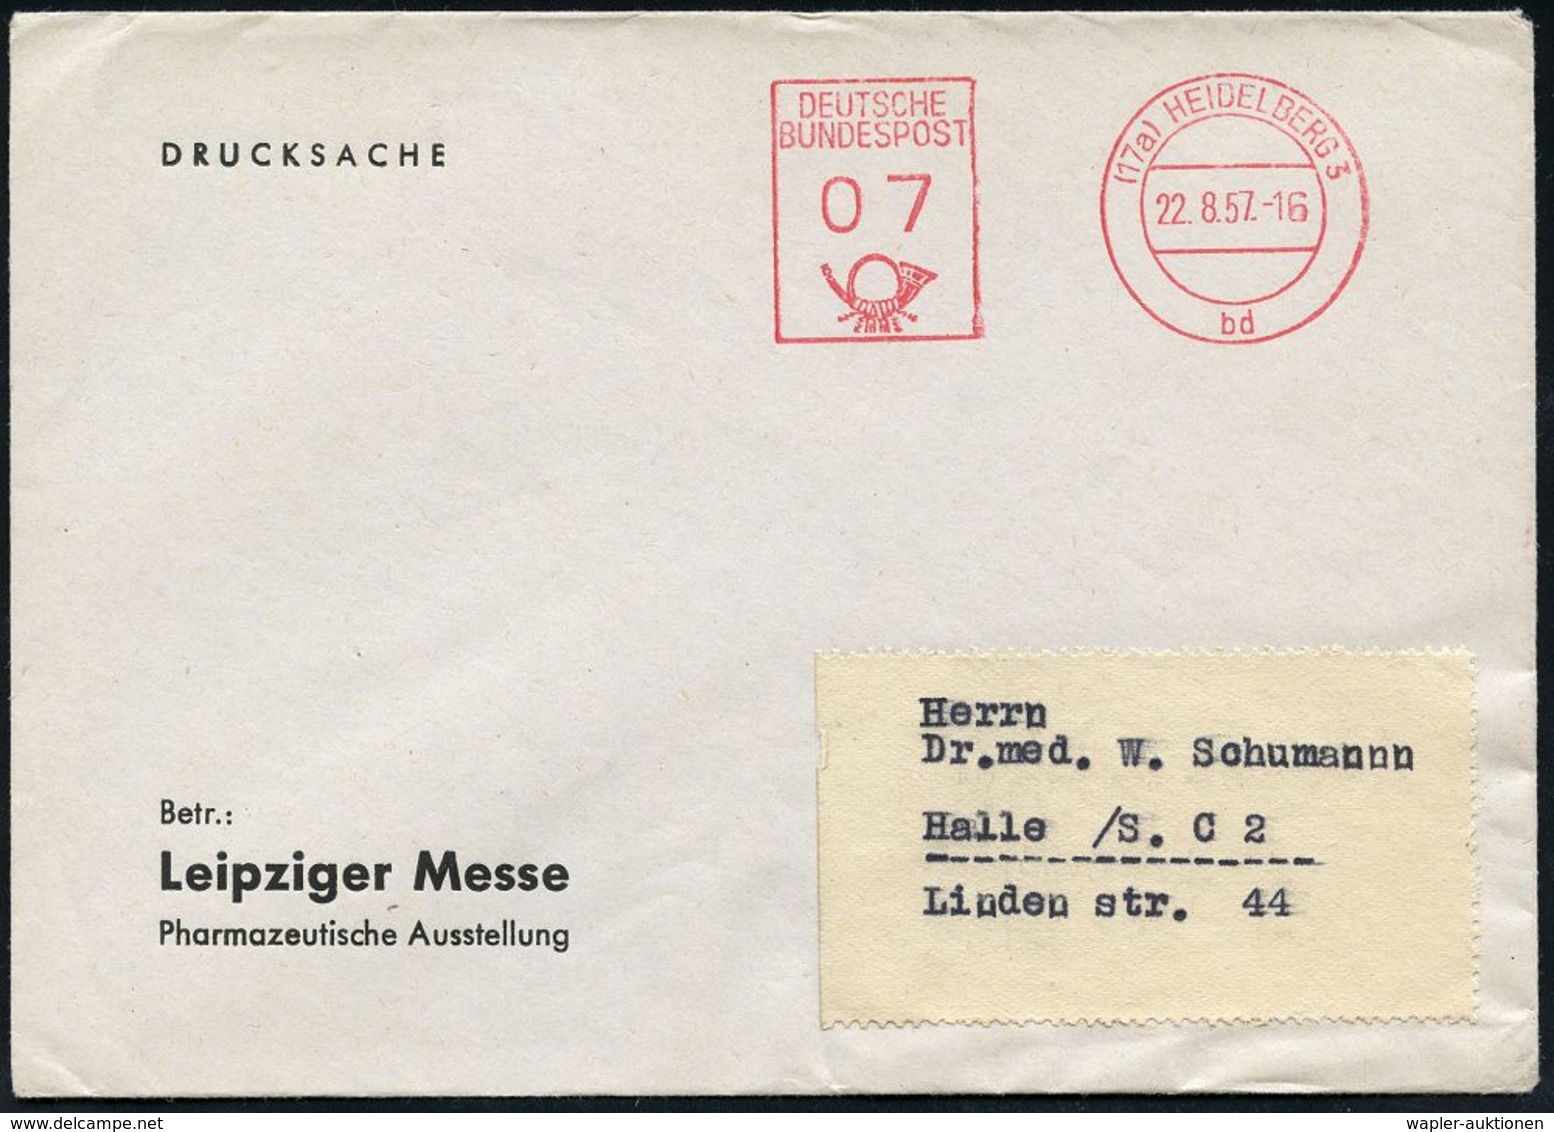 INTERNATIONALE LEIPZIGER MUSTERMESSE (MM) : (17a) HEIDELBERG 3/ Bd/ DEUTSCHE/ BUNDESPOST 1937 (22.8.) PFS O7 Pf. Auf Vor - Unclassified